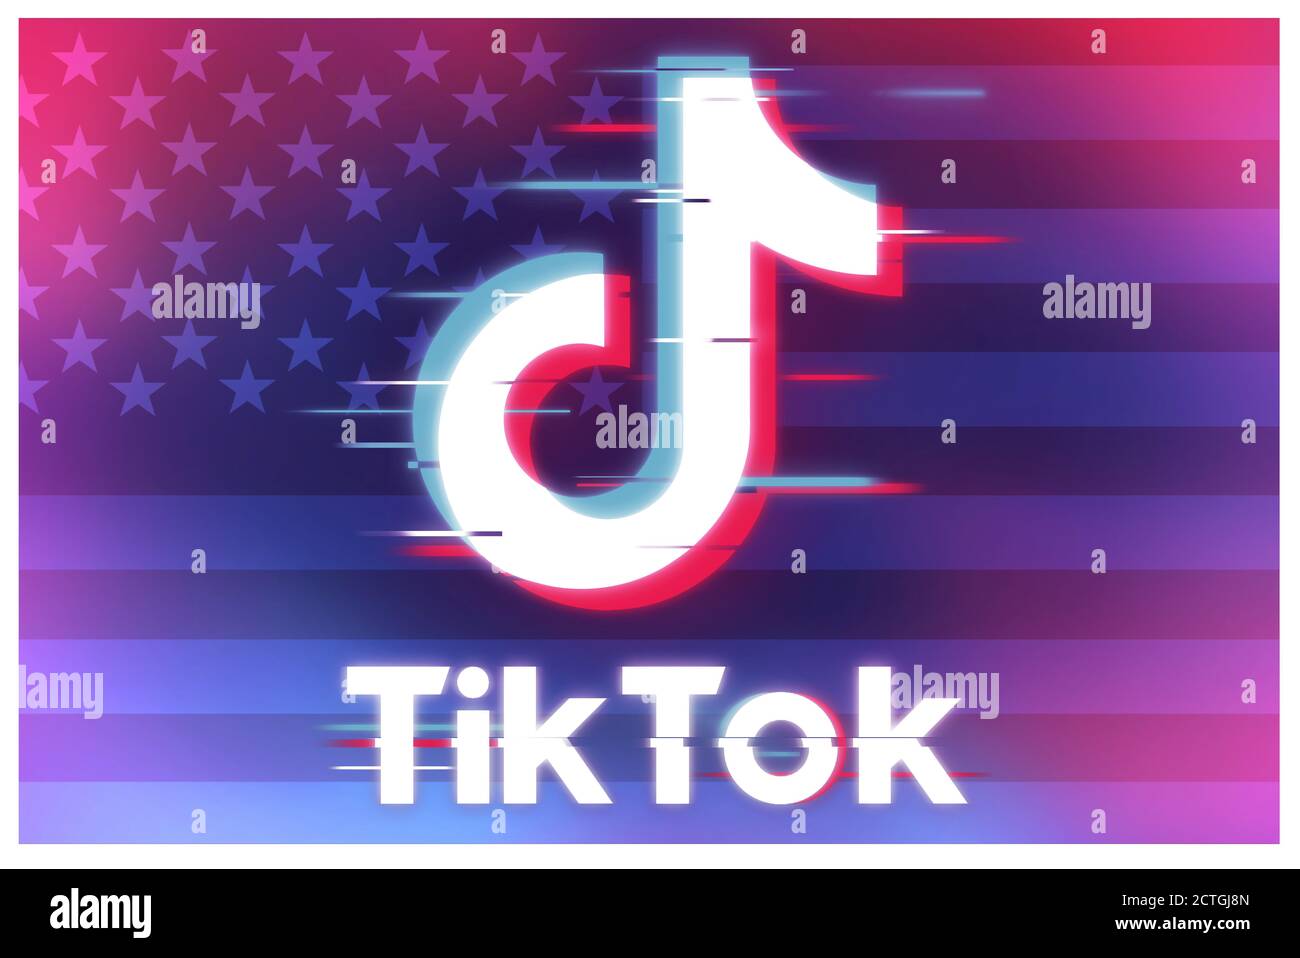 Tiktok logo: Logo Tiktok đang dần trở thành biểu tượng của thời đại mới, giúp ghi dấu ấn và nhận diện thương hiệu của các doanh nghiệp. Hãy cùng chúng tôi khám phá sức mạnh của một logo đồng nhất và giúp thương hiệu của bạn ghi nhận những thành công lớn.